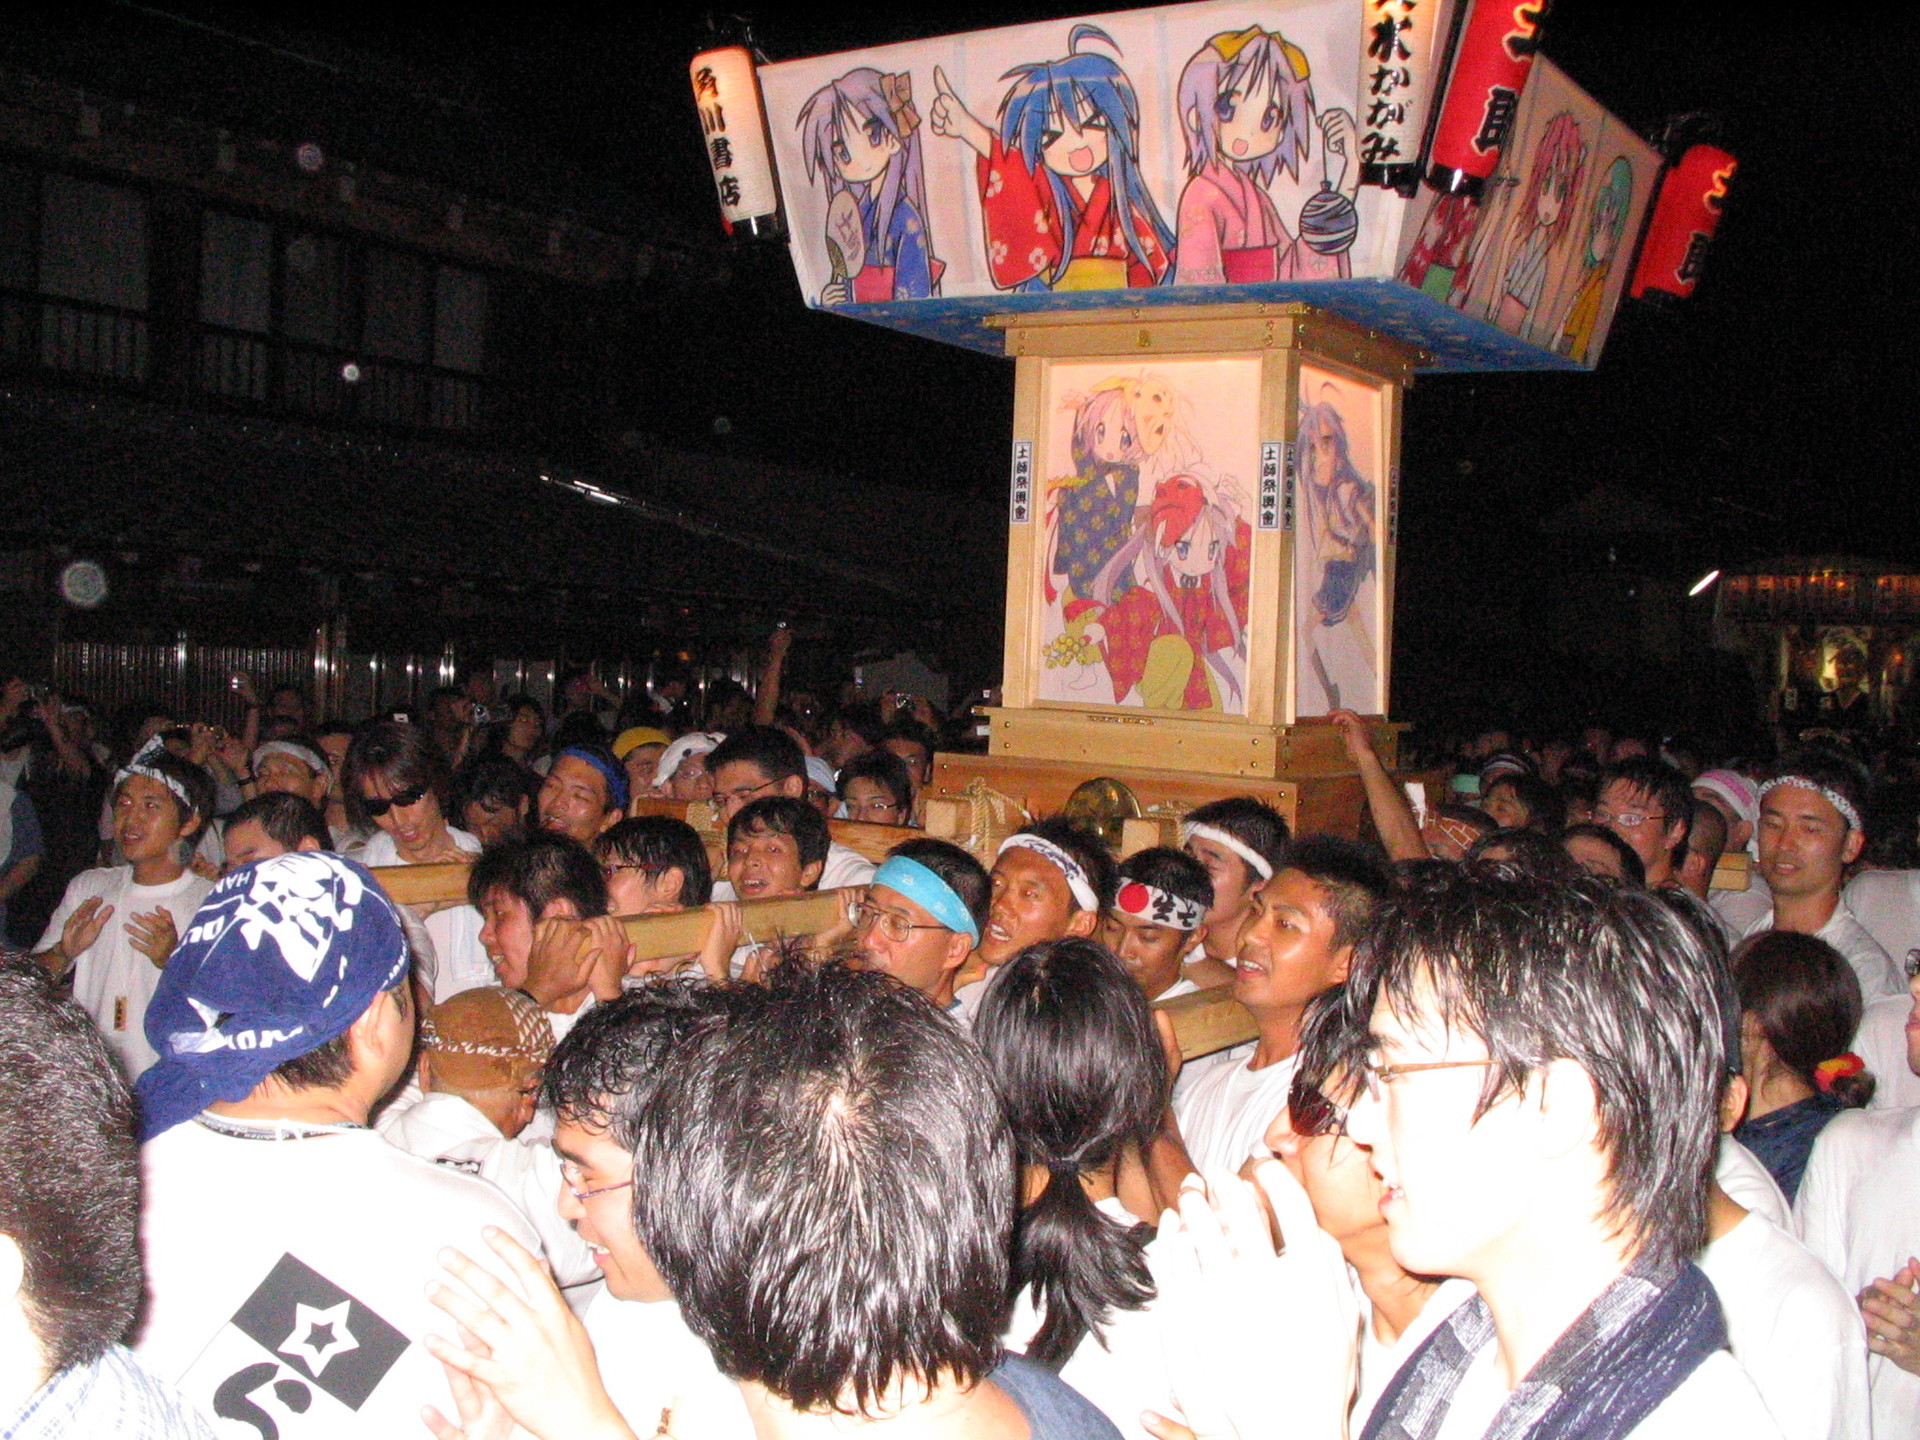 聖地巡礼の元祖 鷲宮神社に らき すた神輿 を担ぎに行く 日本の鉄道全路線 乗りつぶしへの道